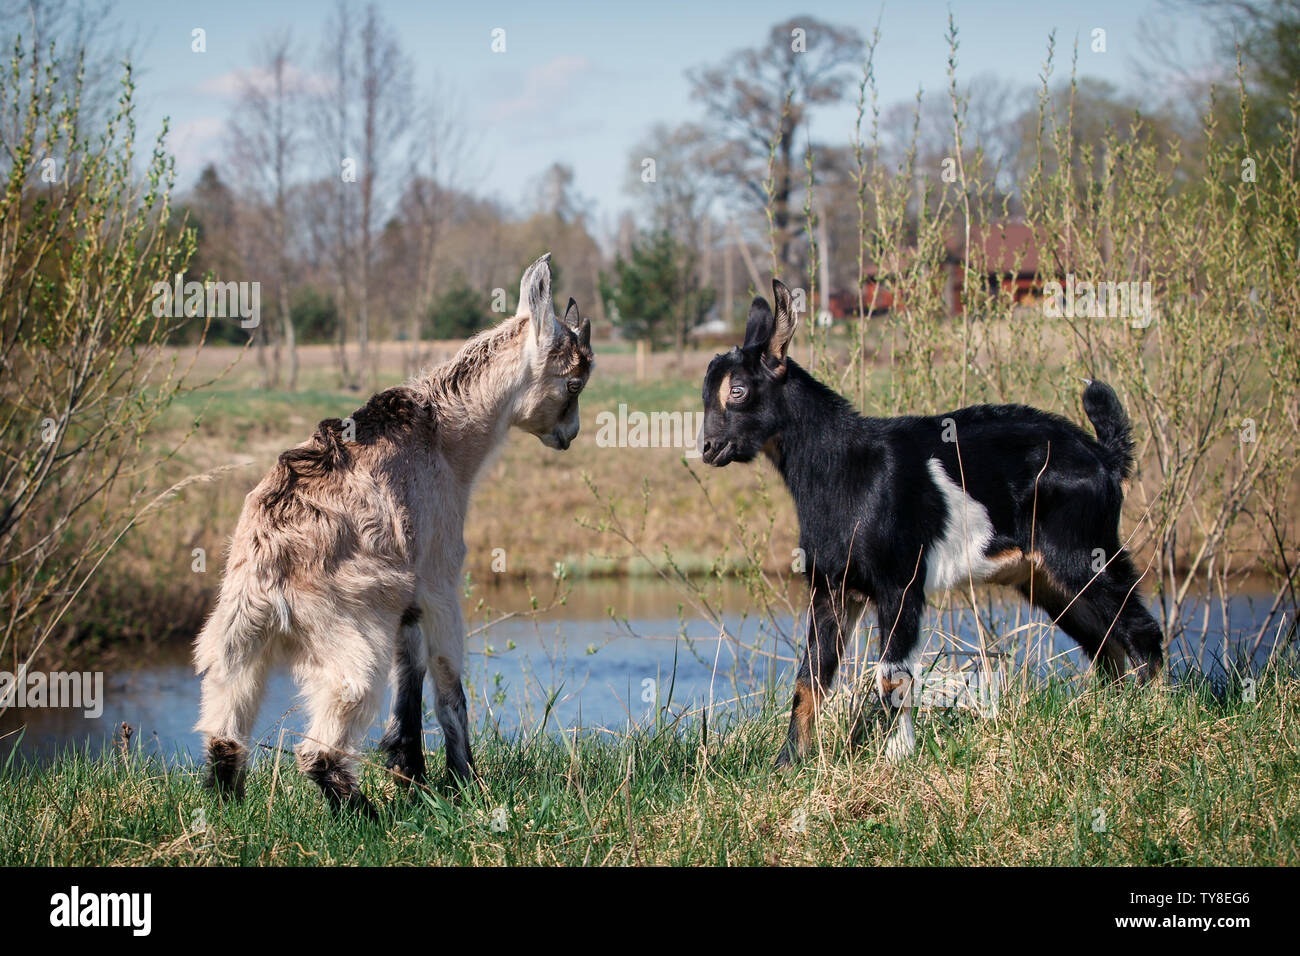 Dos jóvenes y cabritos juego de lucha cerca del cuerpo de agua en la pradera Foto de stock